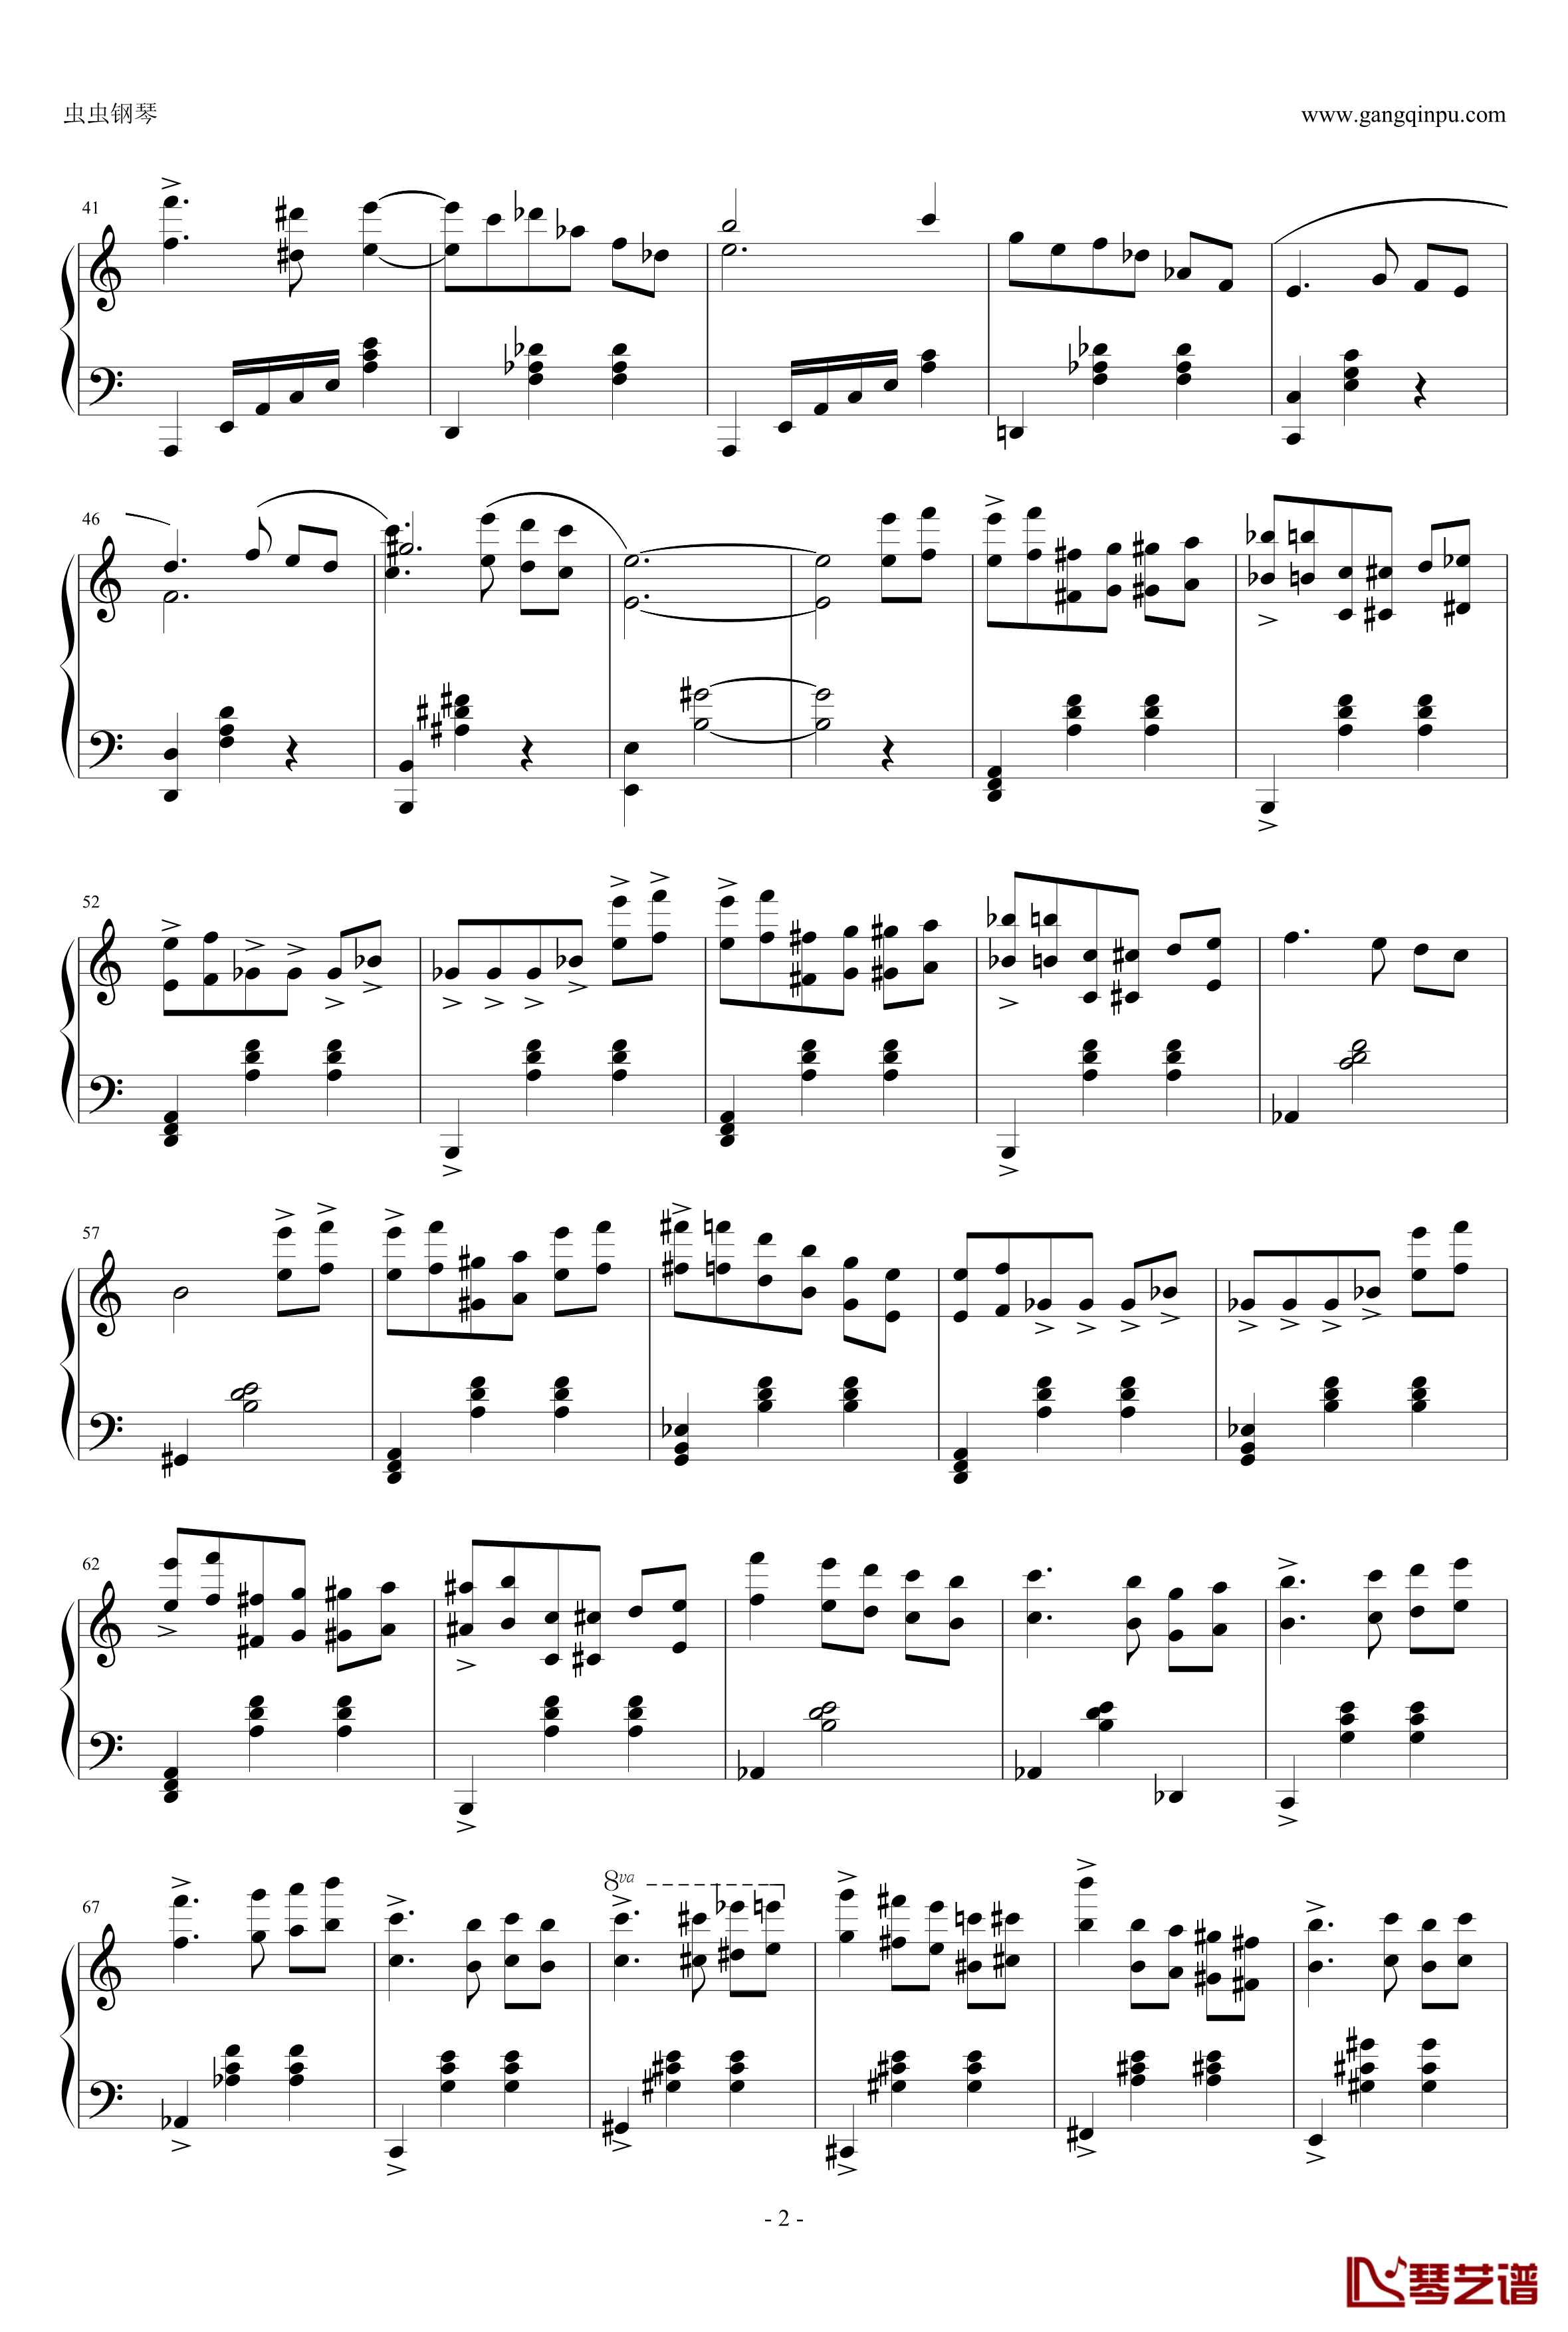 圆舞曲钢琴谱-灰姑娘-普罗科非耶夫2